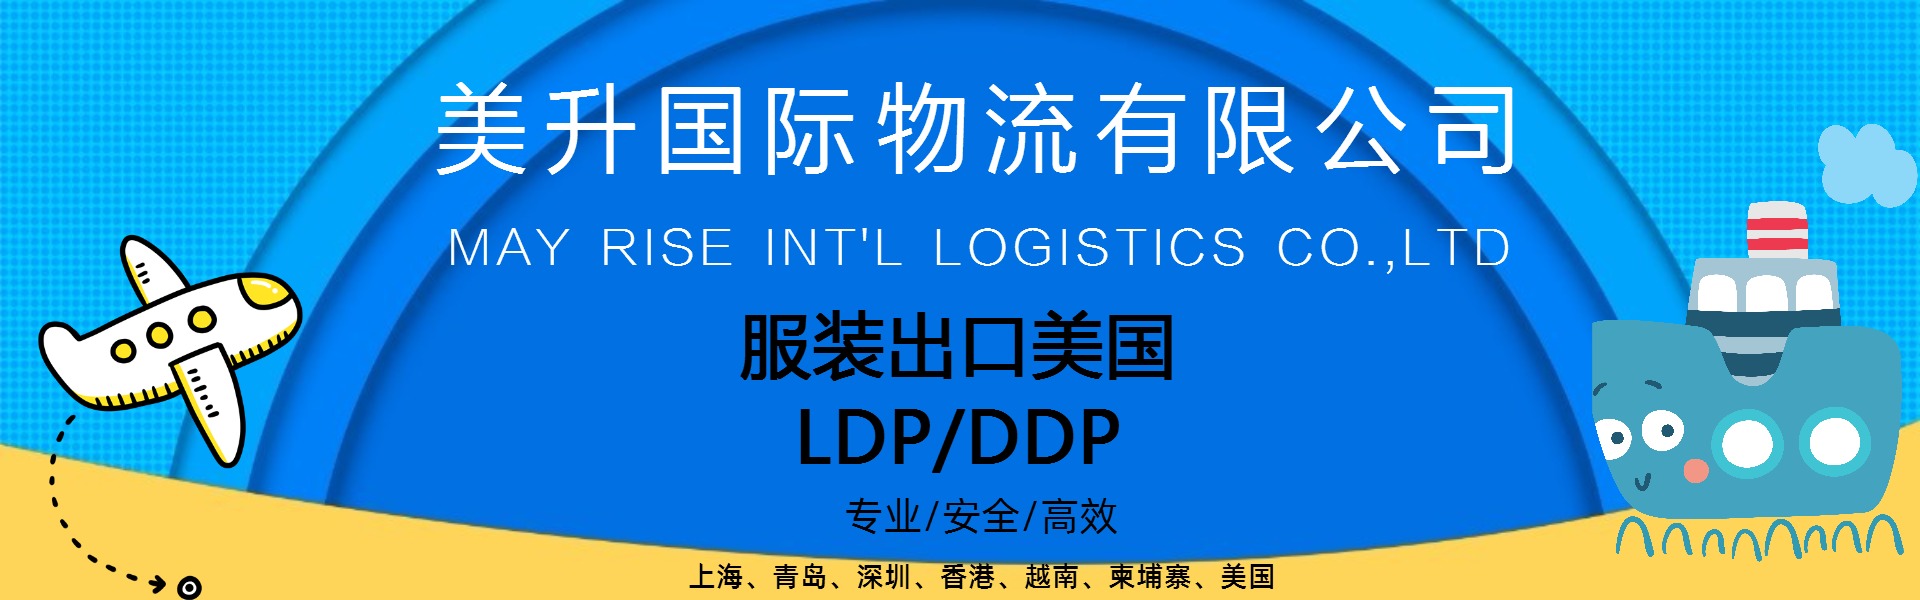 服装类出口LDP DDP服务